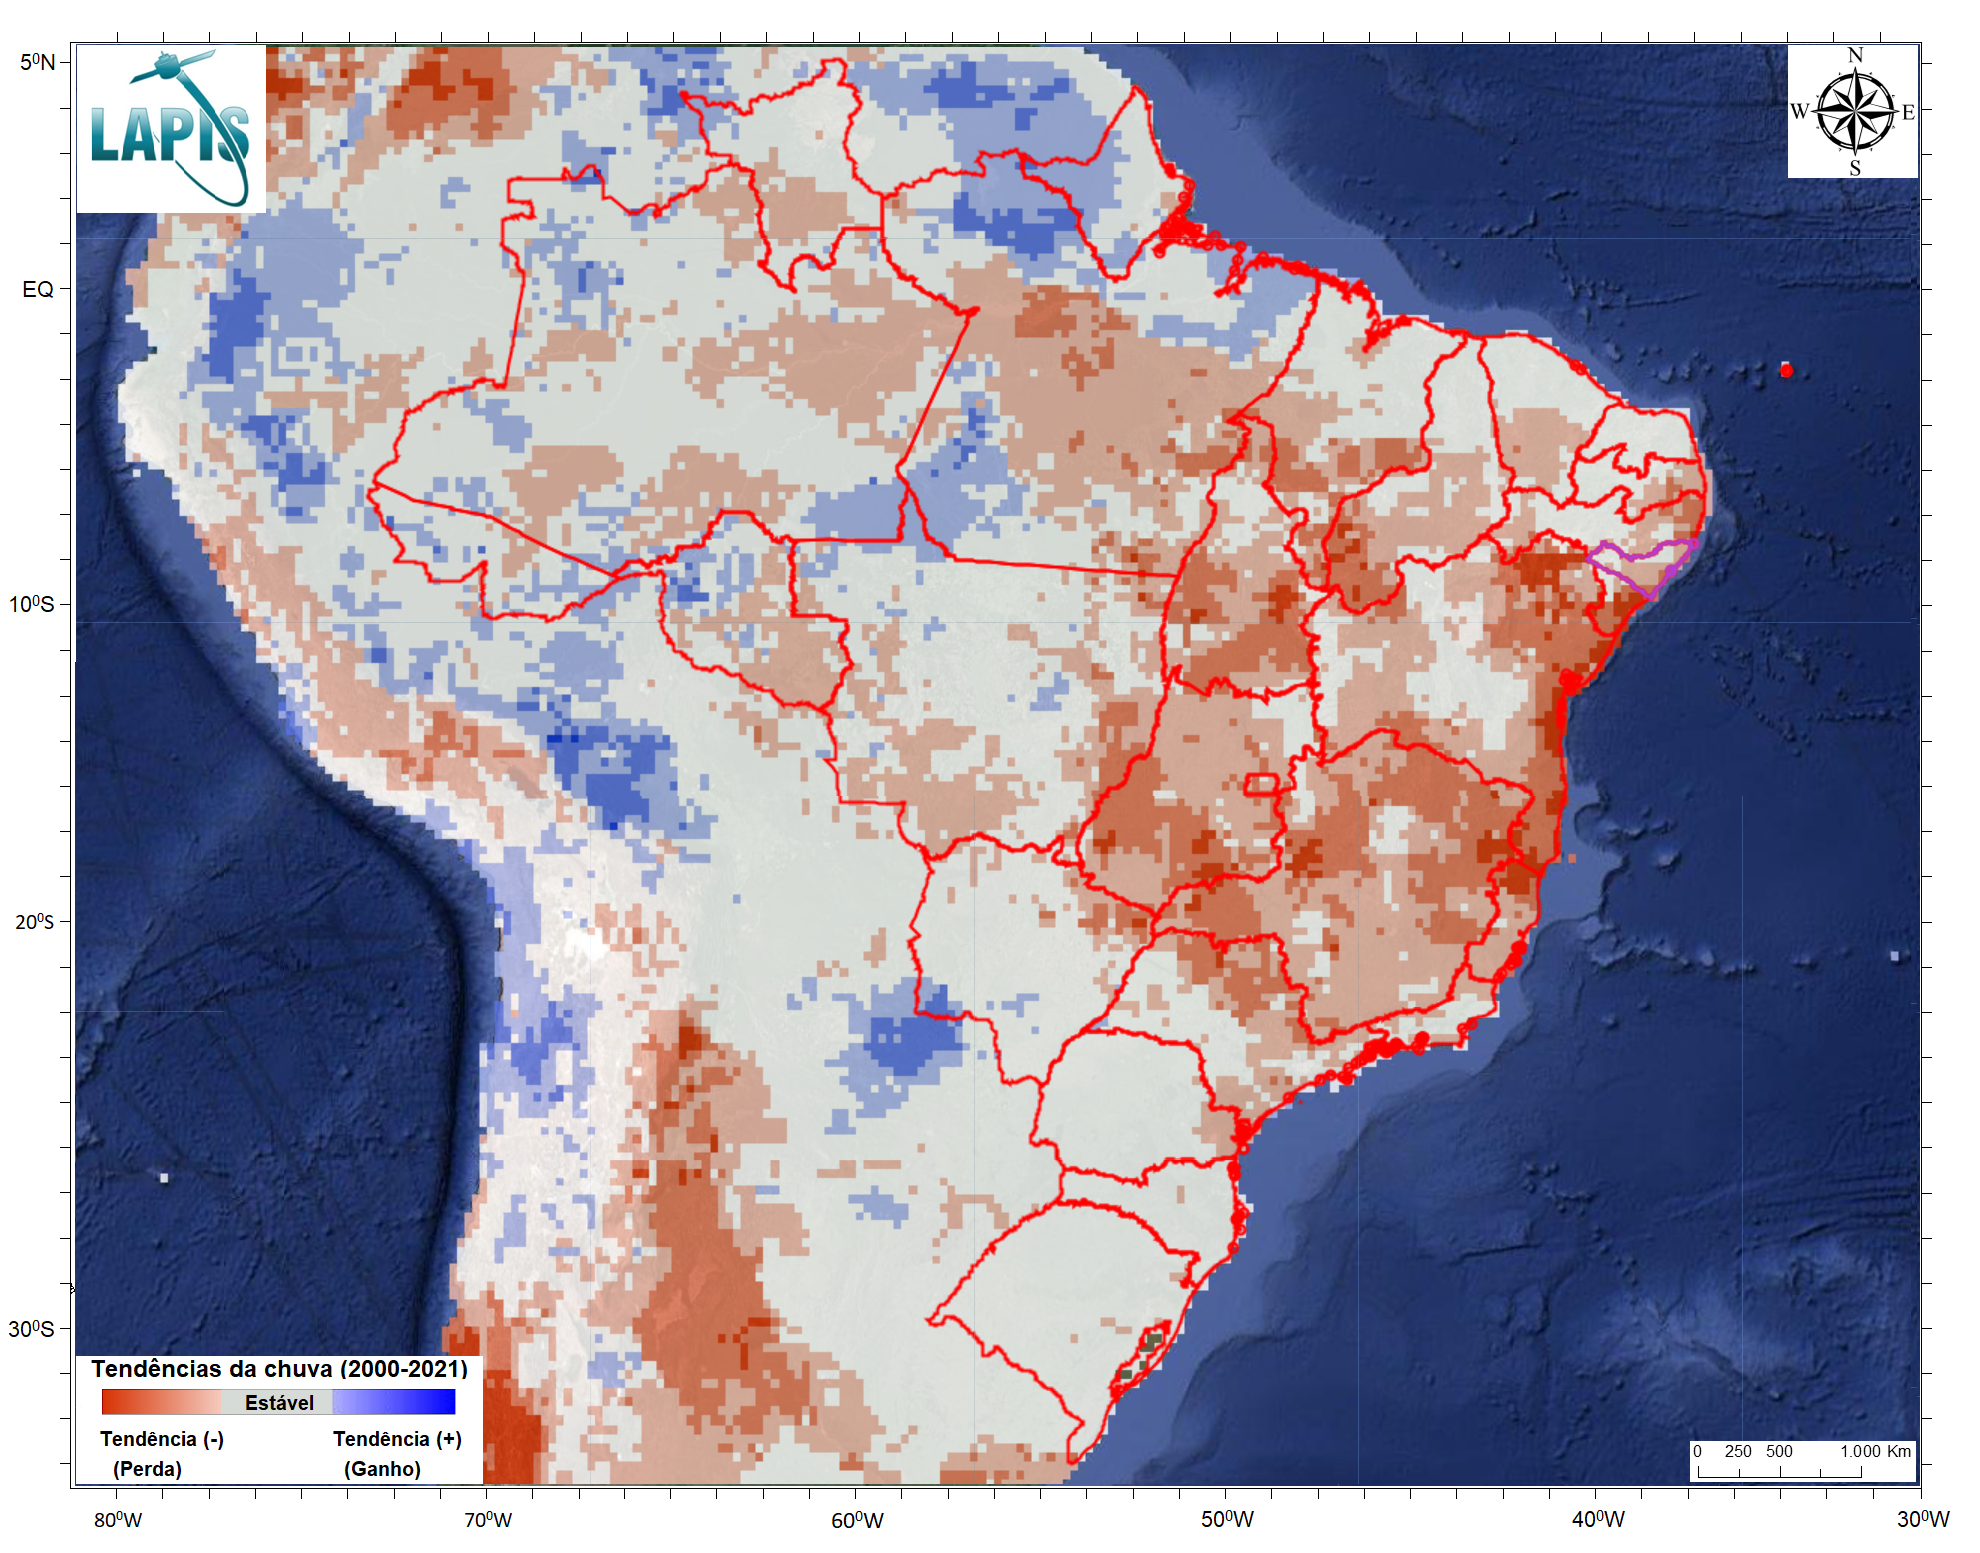 Mapa da precipitação no Brasil, 2000-2020, processado no QGIS